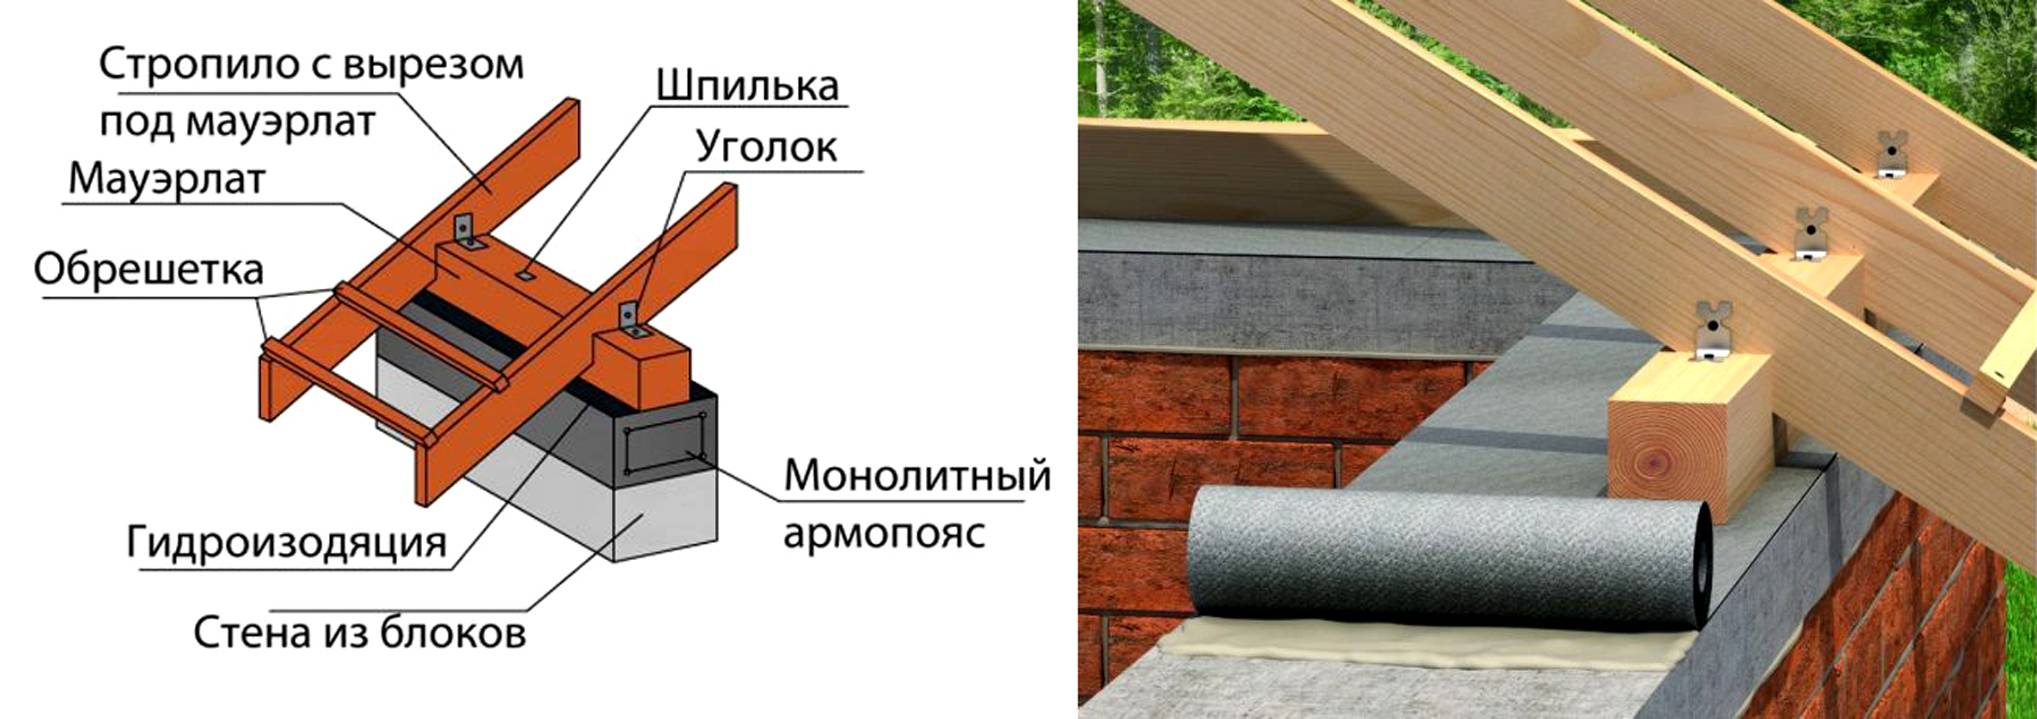 Мауэрлат для двускатной крыши: что такое мурлат в строительстве, крепление, как правильно класть, расчет для двухскатной крыши, установка стропил